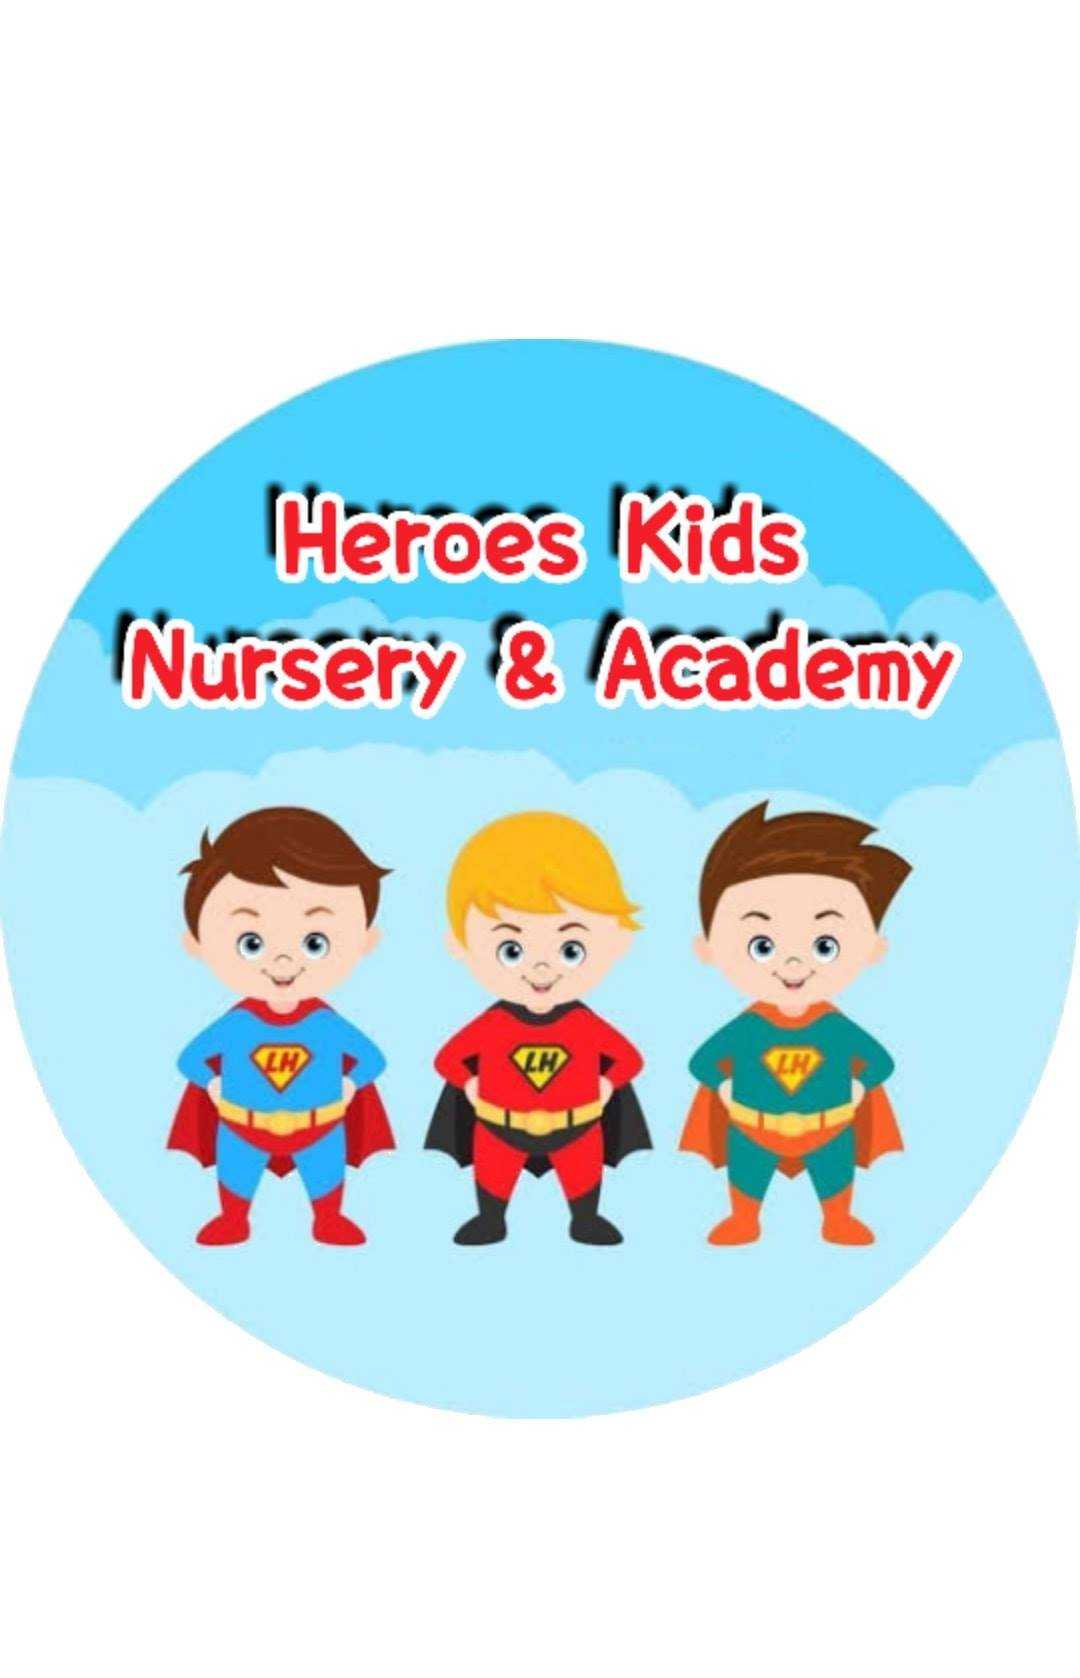 Heroes Kids Nursery